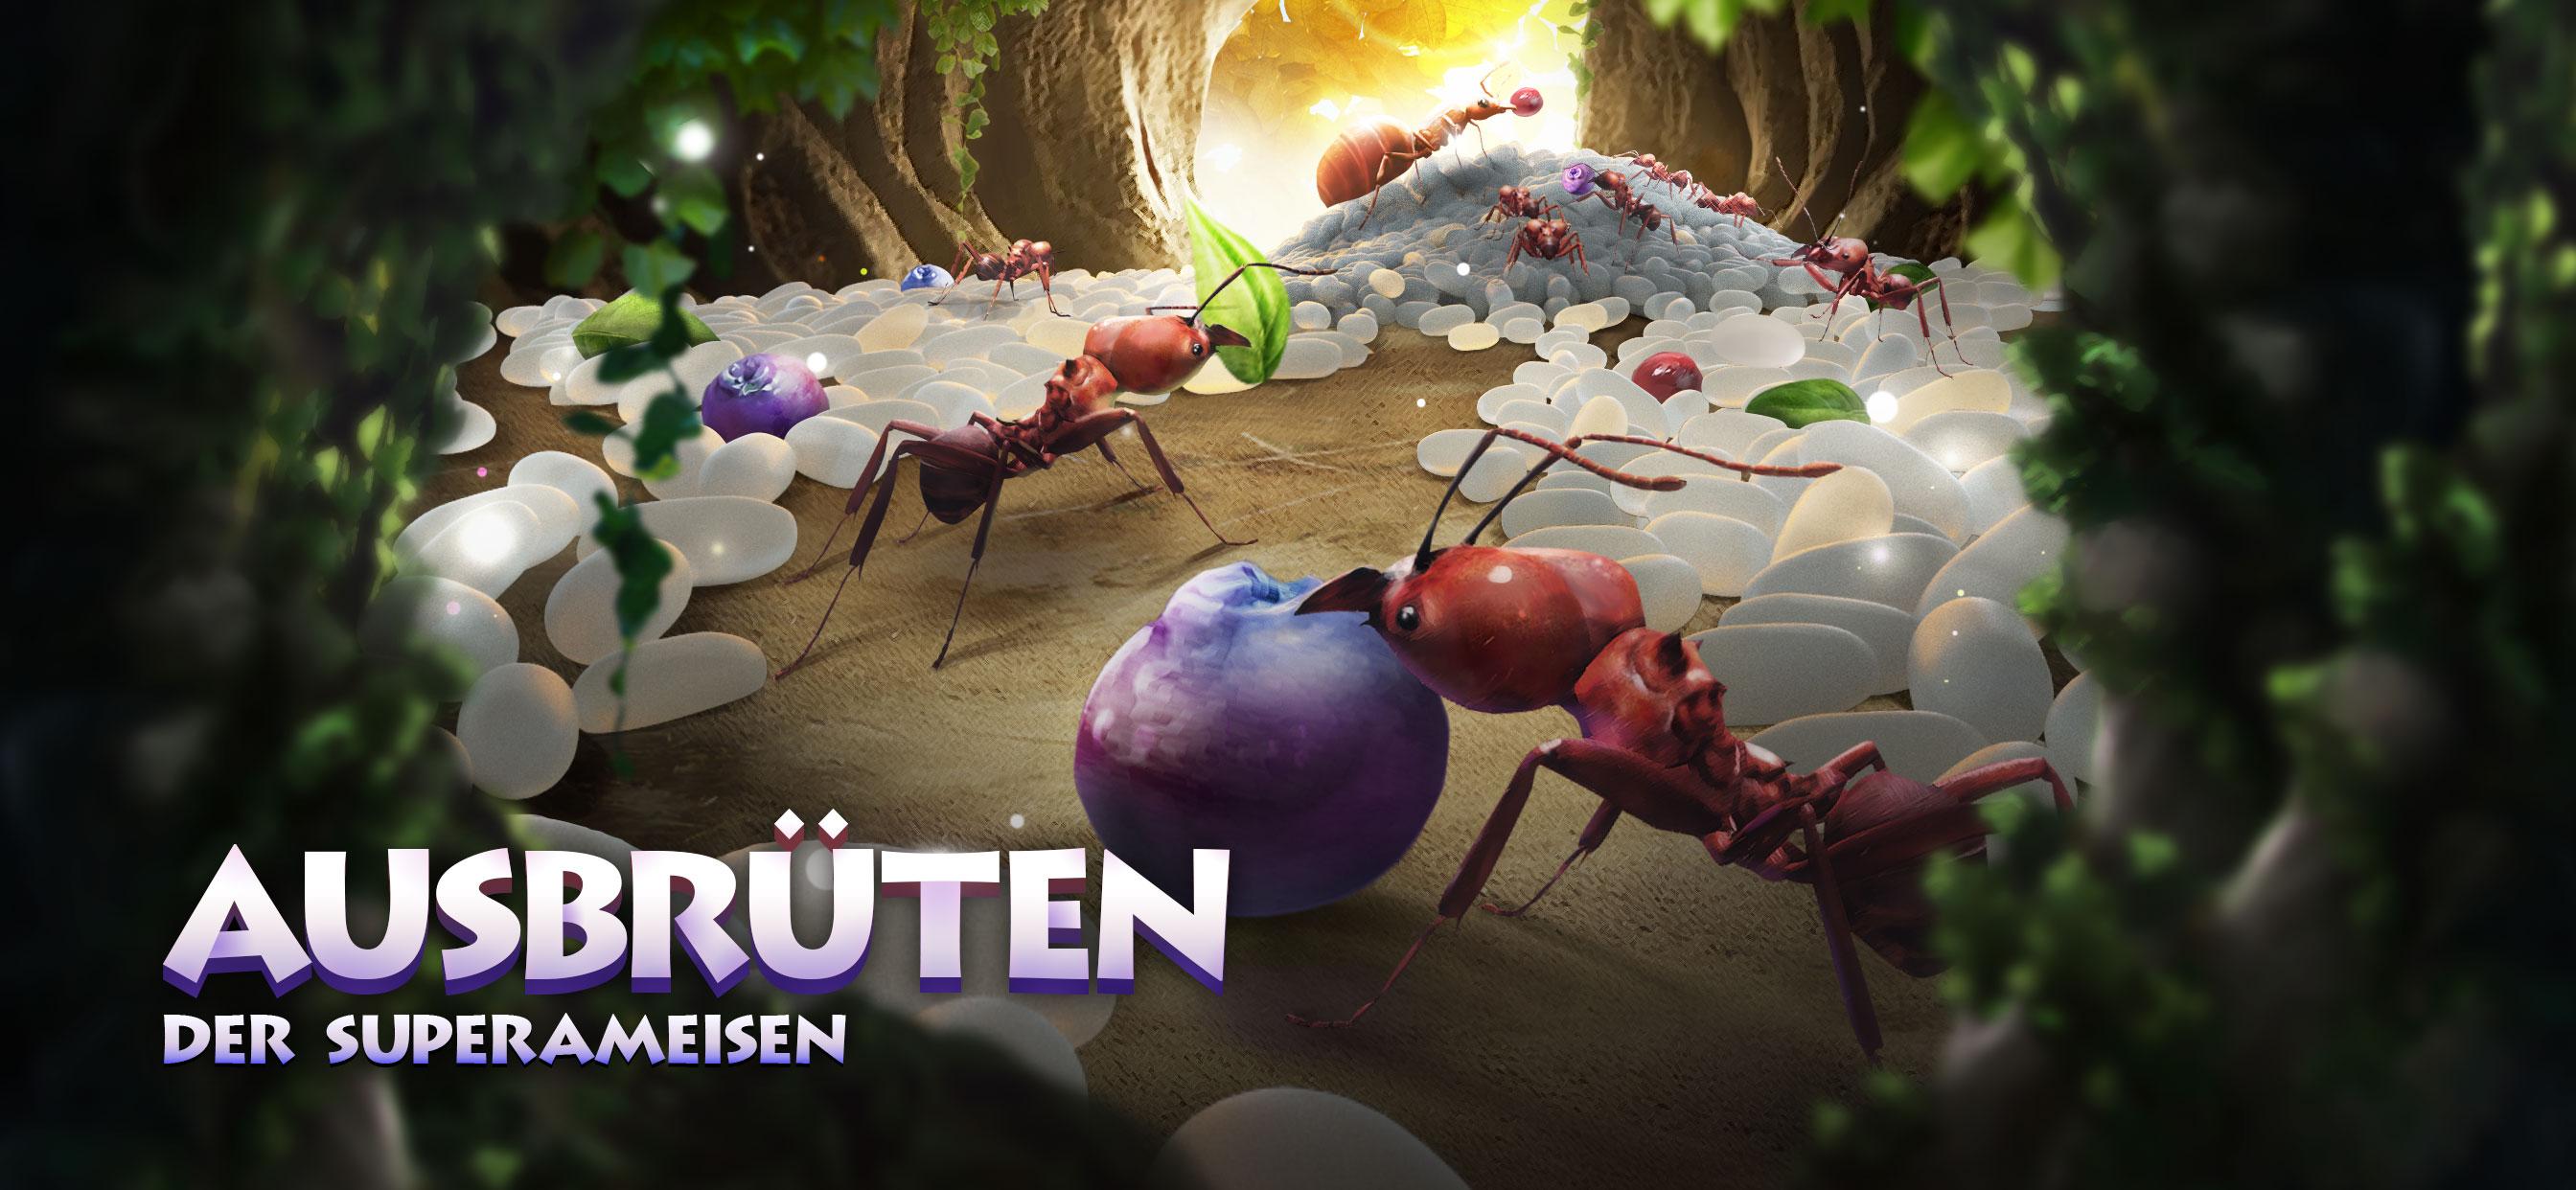 The Ants: Underground Kingdom für Android - APK herunterladen